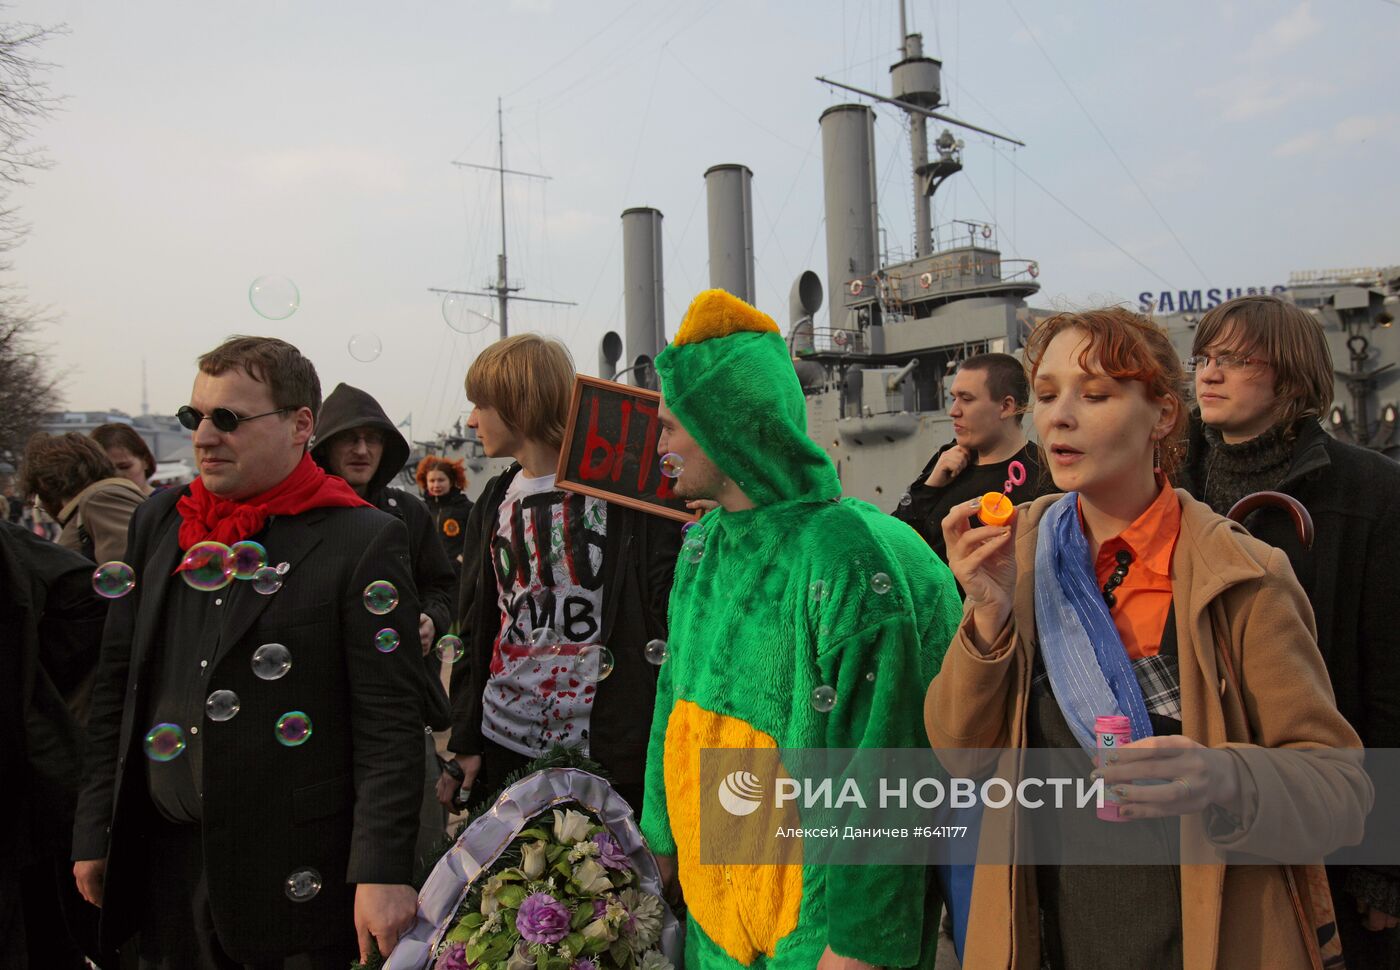 Похороны мертворожденной Монстрации в Санкт-Петербурге